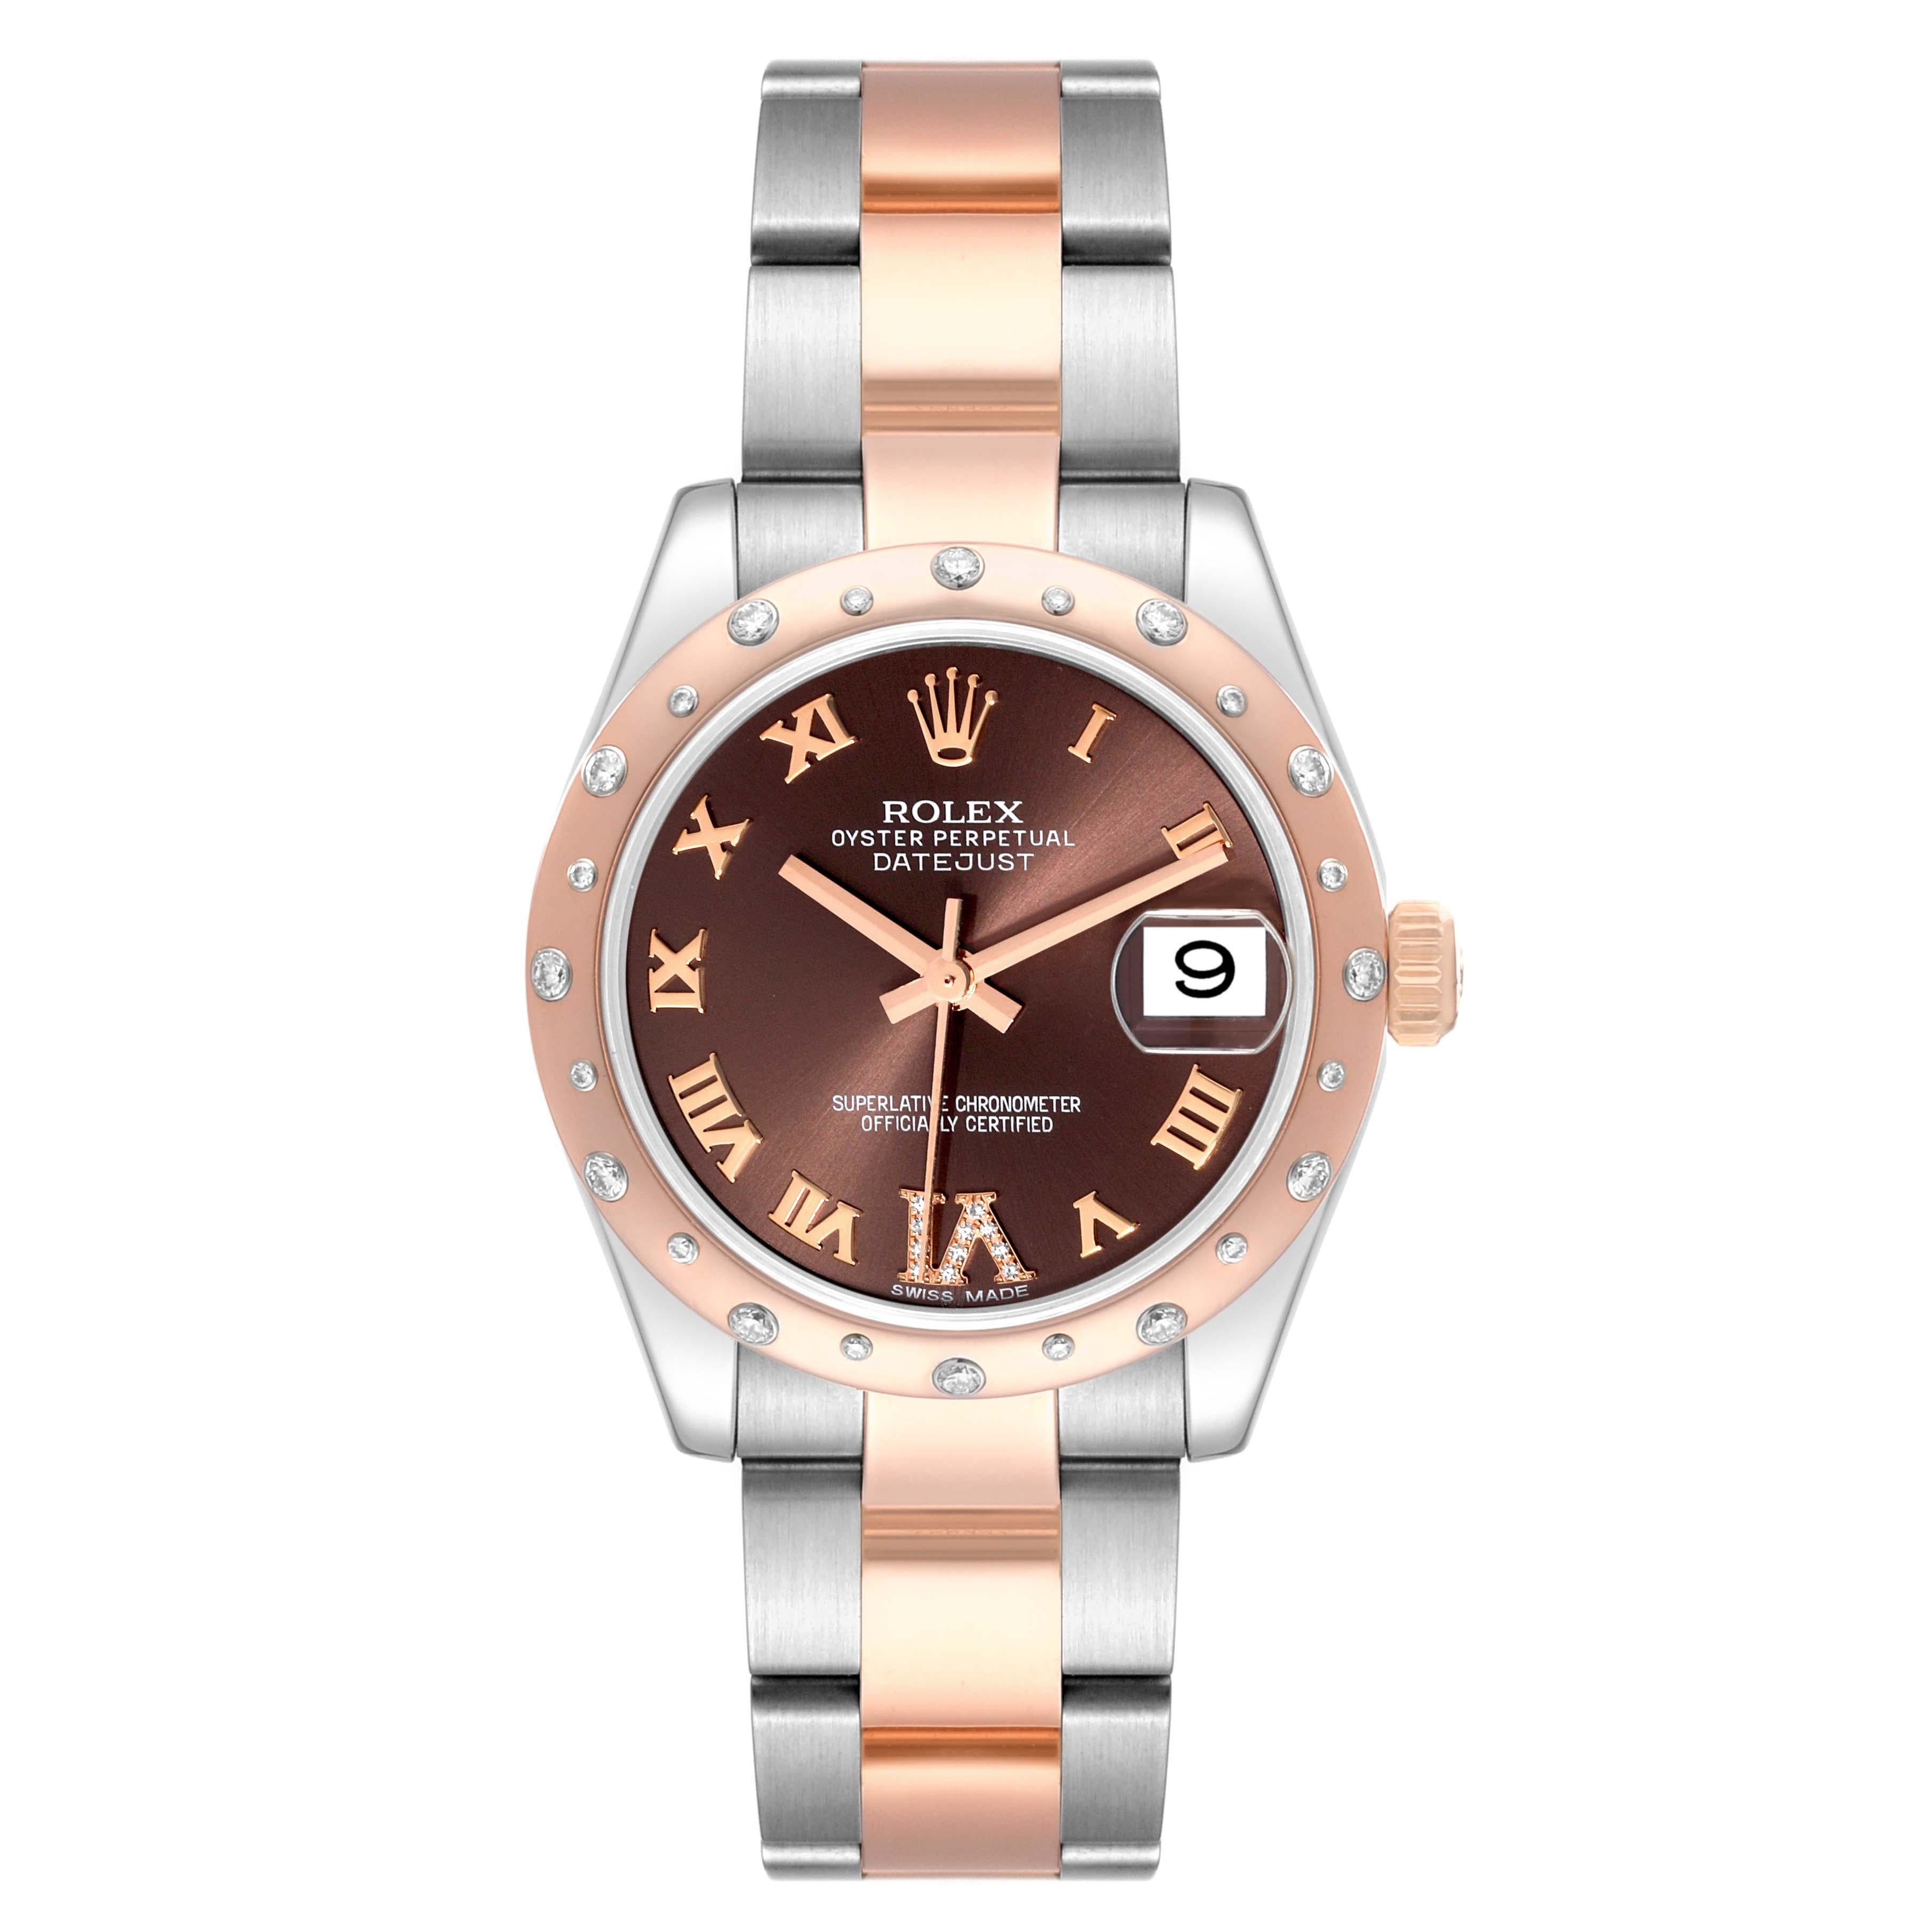 Rolex Datejust Midsize Steel Rose Gold Diamond Ladies Watch 178341 Box Card. Mouvement à remontage automatique certifié officiellement chronomètre avec fonction de date rapide. Boîtier en acier inoxydable et en or rose 18 carats de 31 mm de